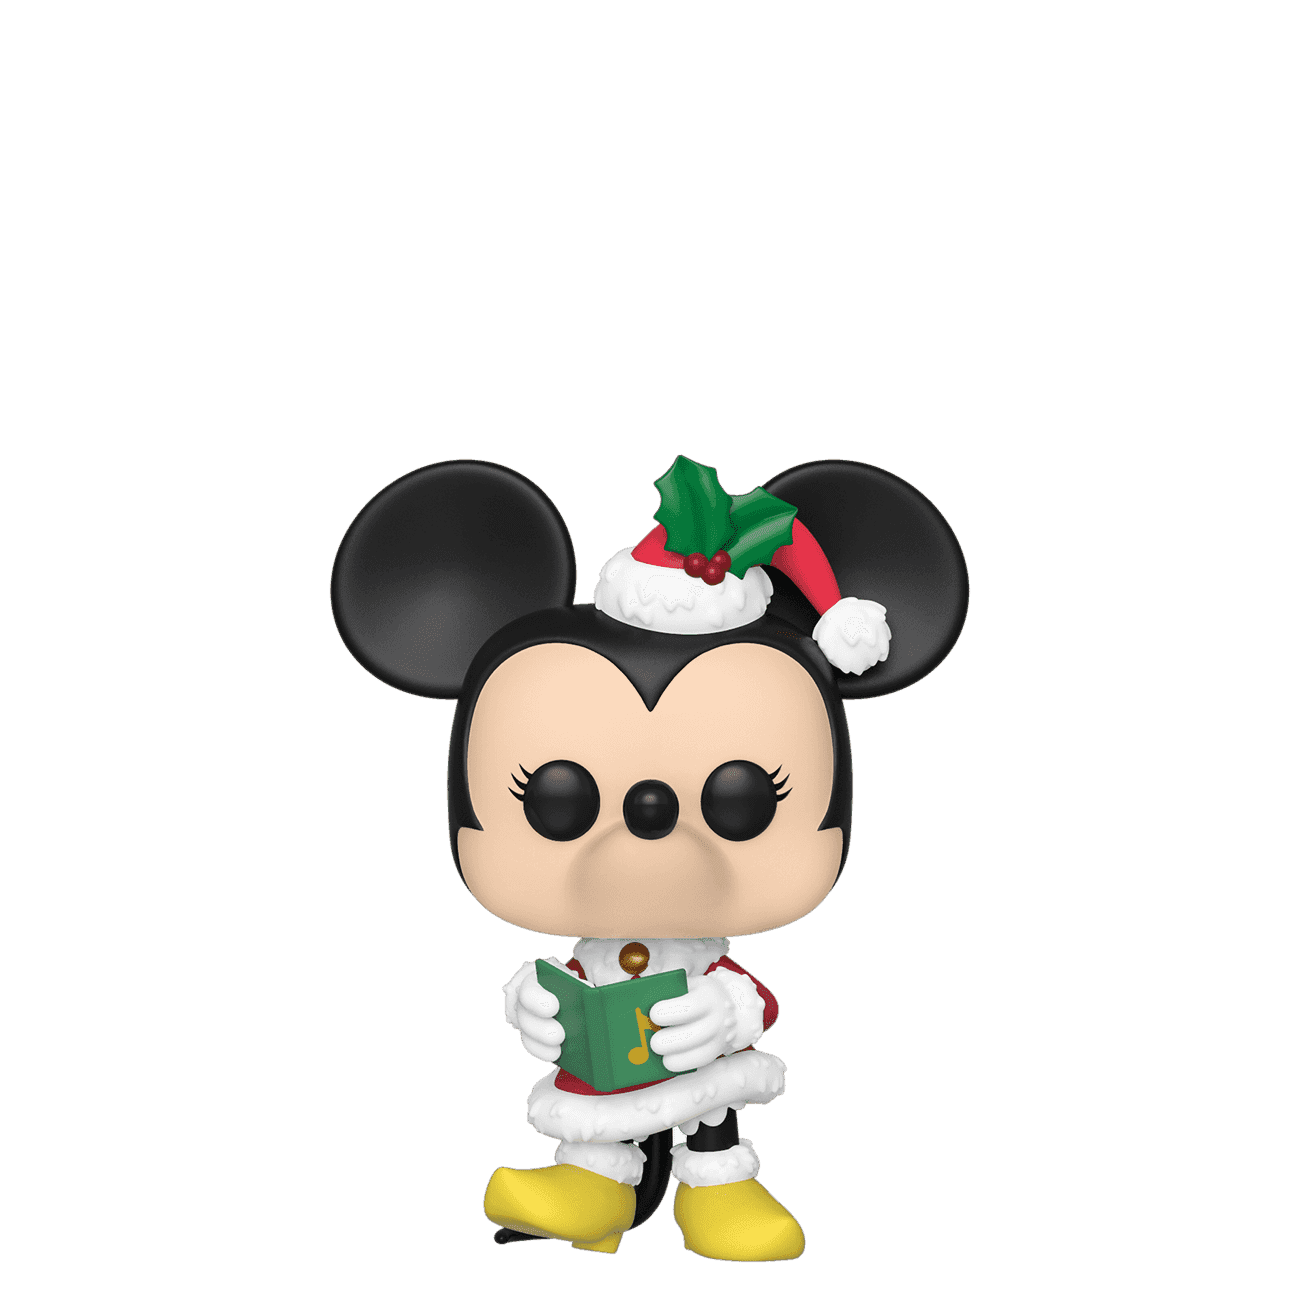 image de Minnie Mouse